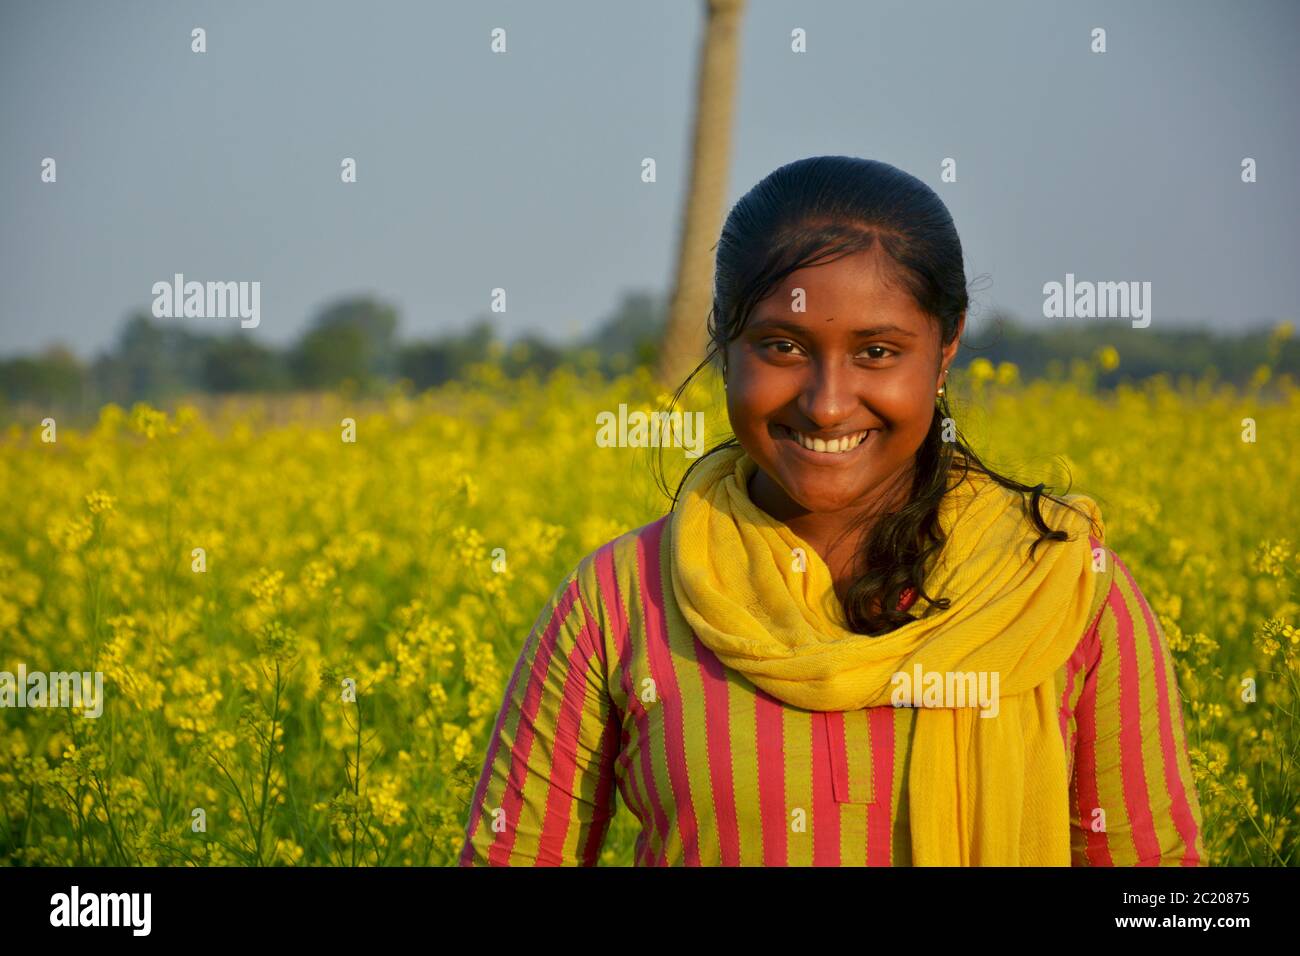 : ein indisches Teenager Mädchen lächeln und posieren für Fotografie in einem Senffeld, selektive Fokussierung Stockfoto